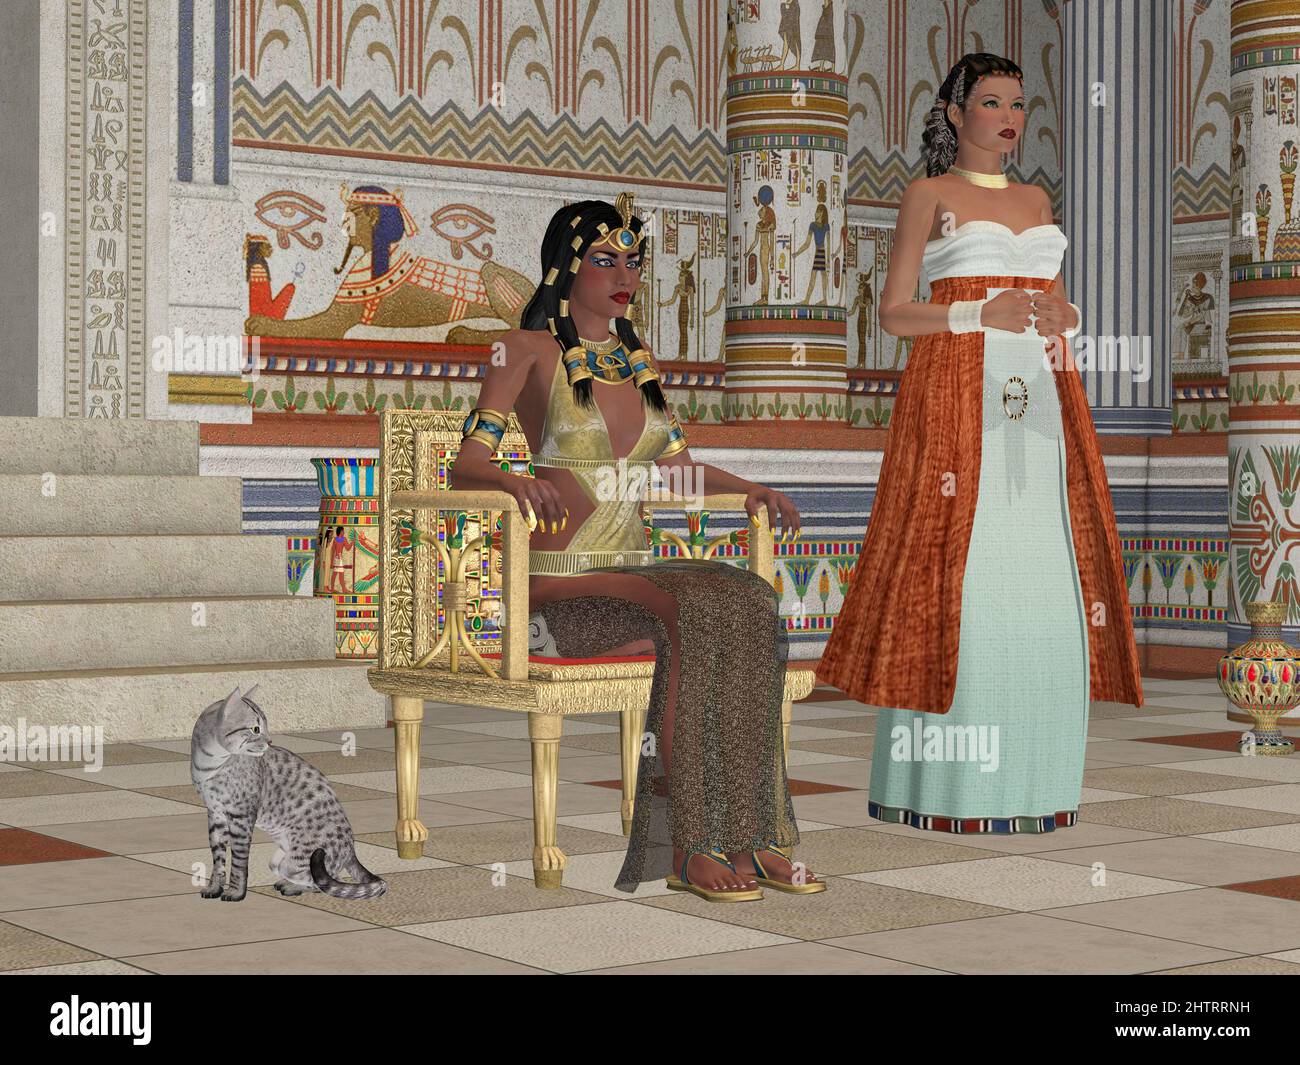 En tissu doré, une reine égyptienne est assise sur un trône avec une jeune fille et un chat Mau. Banque D'Images